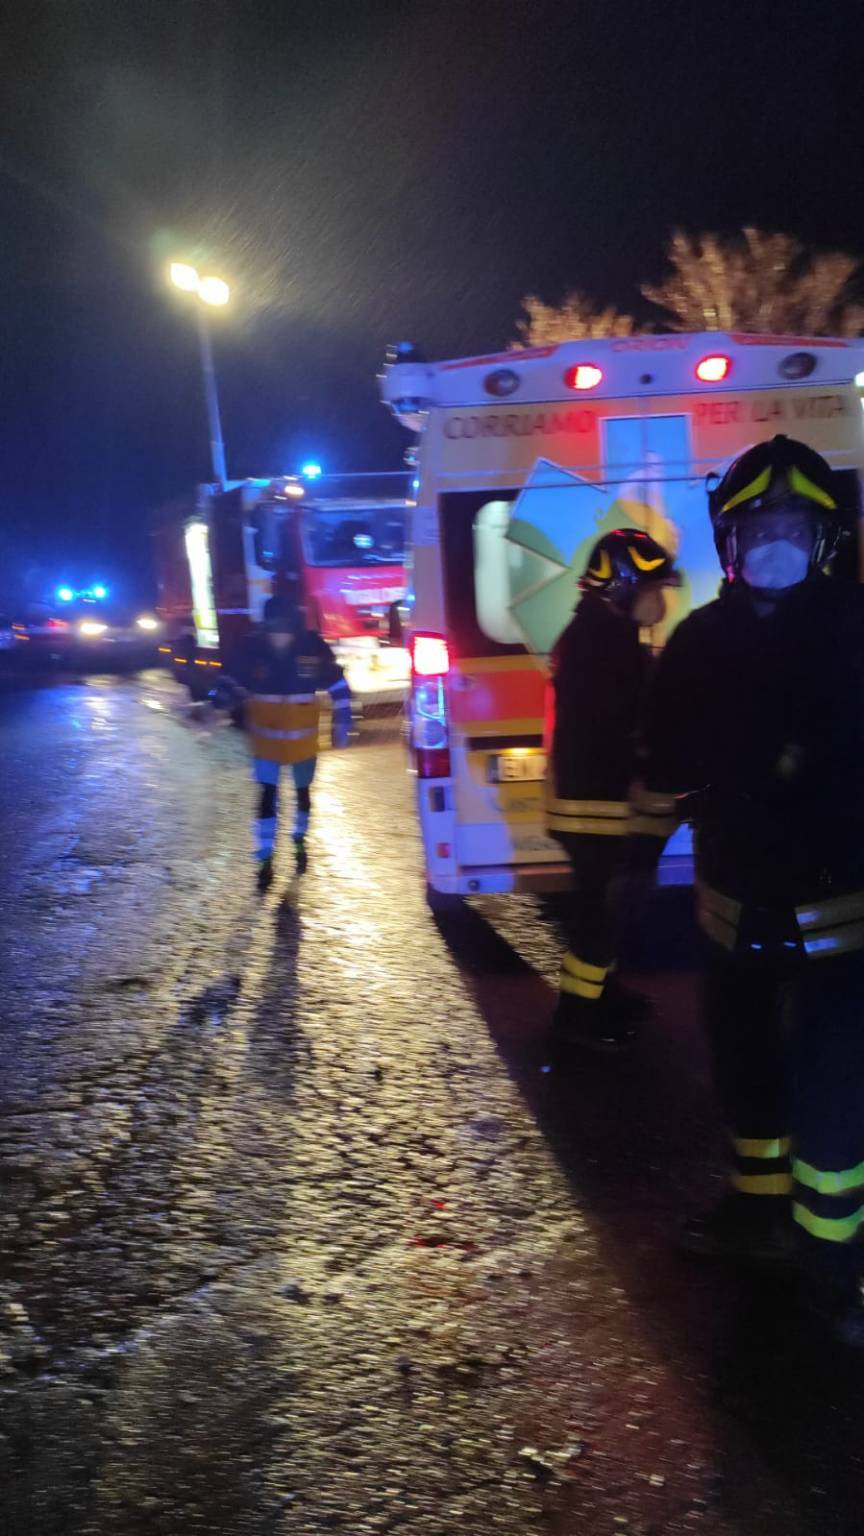 incidente mortale trattore mafalda vigili ambulanza